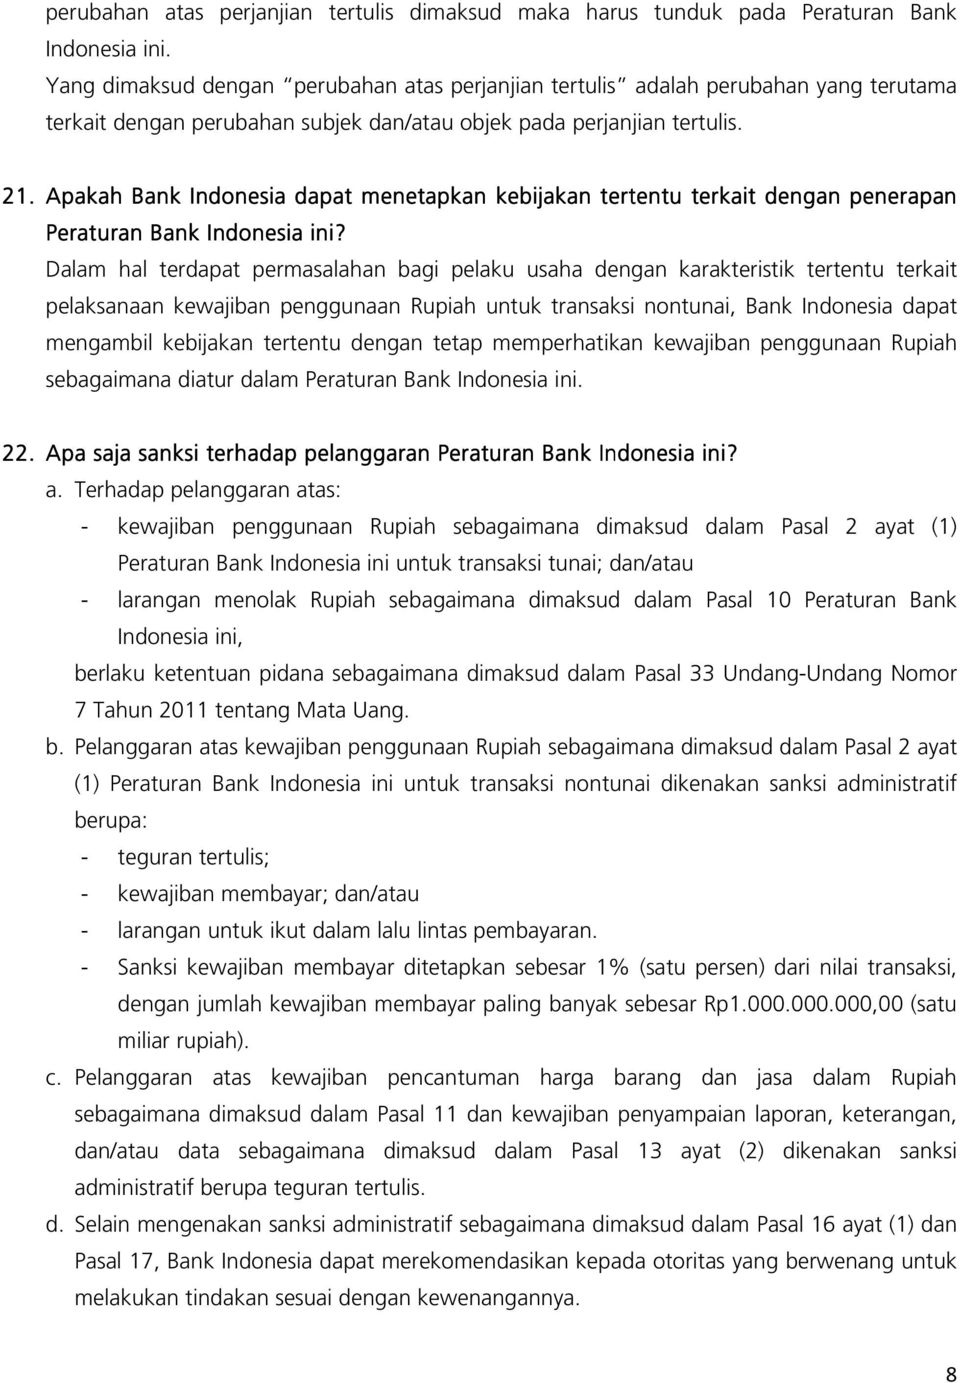 Apakah Bank Indonesia dapat menetapkan kebijakan tertentu terkait dengan penerapan Peraturan Bank Indonesia ini?